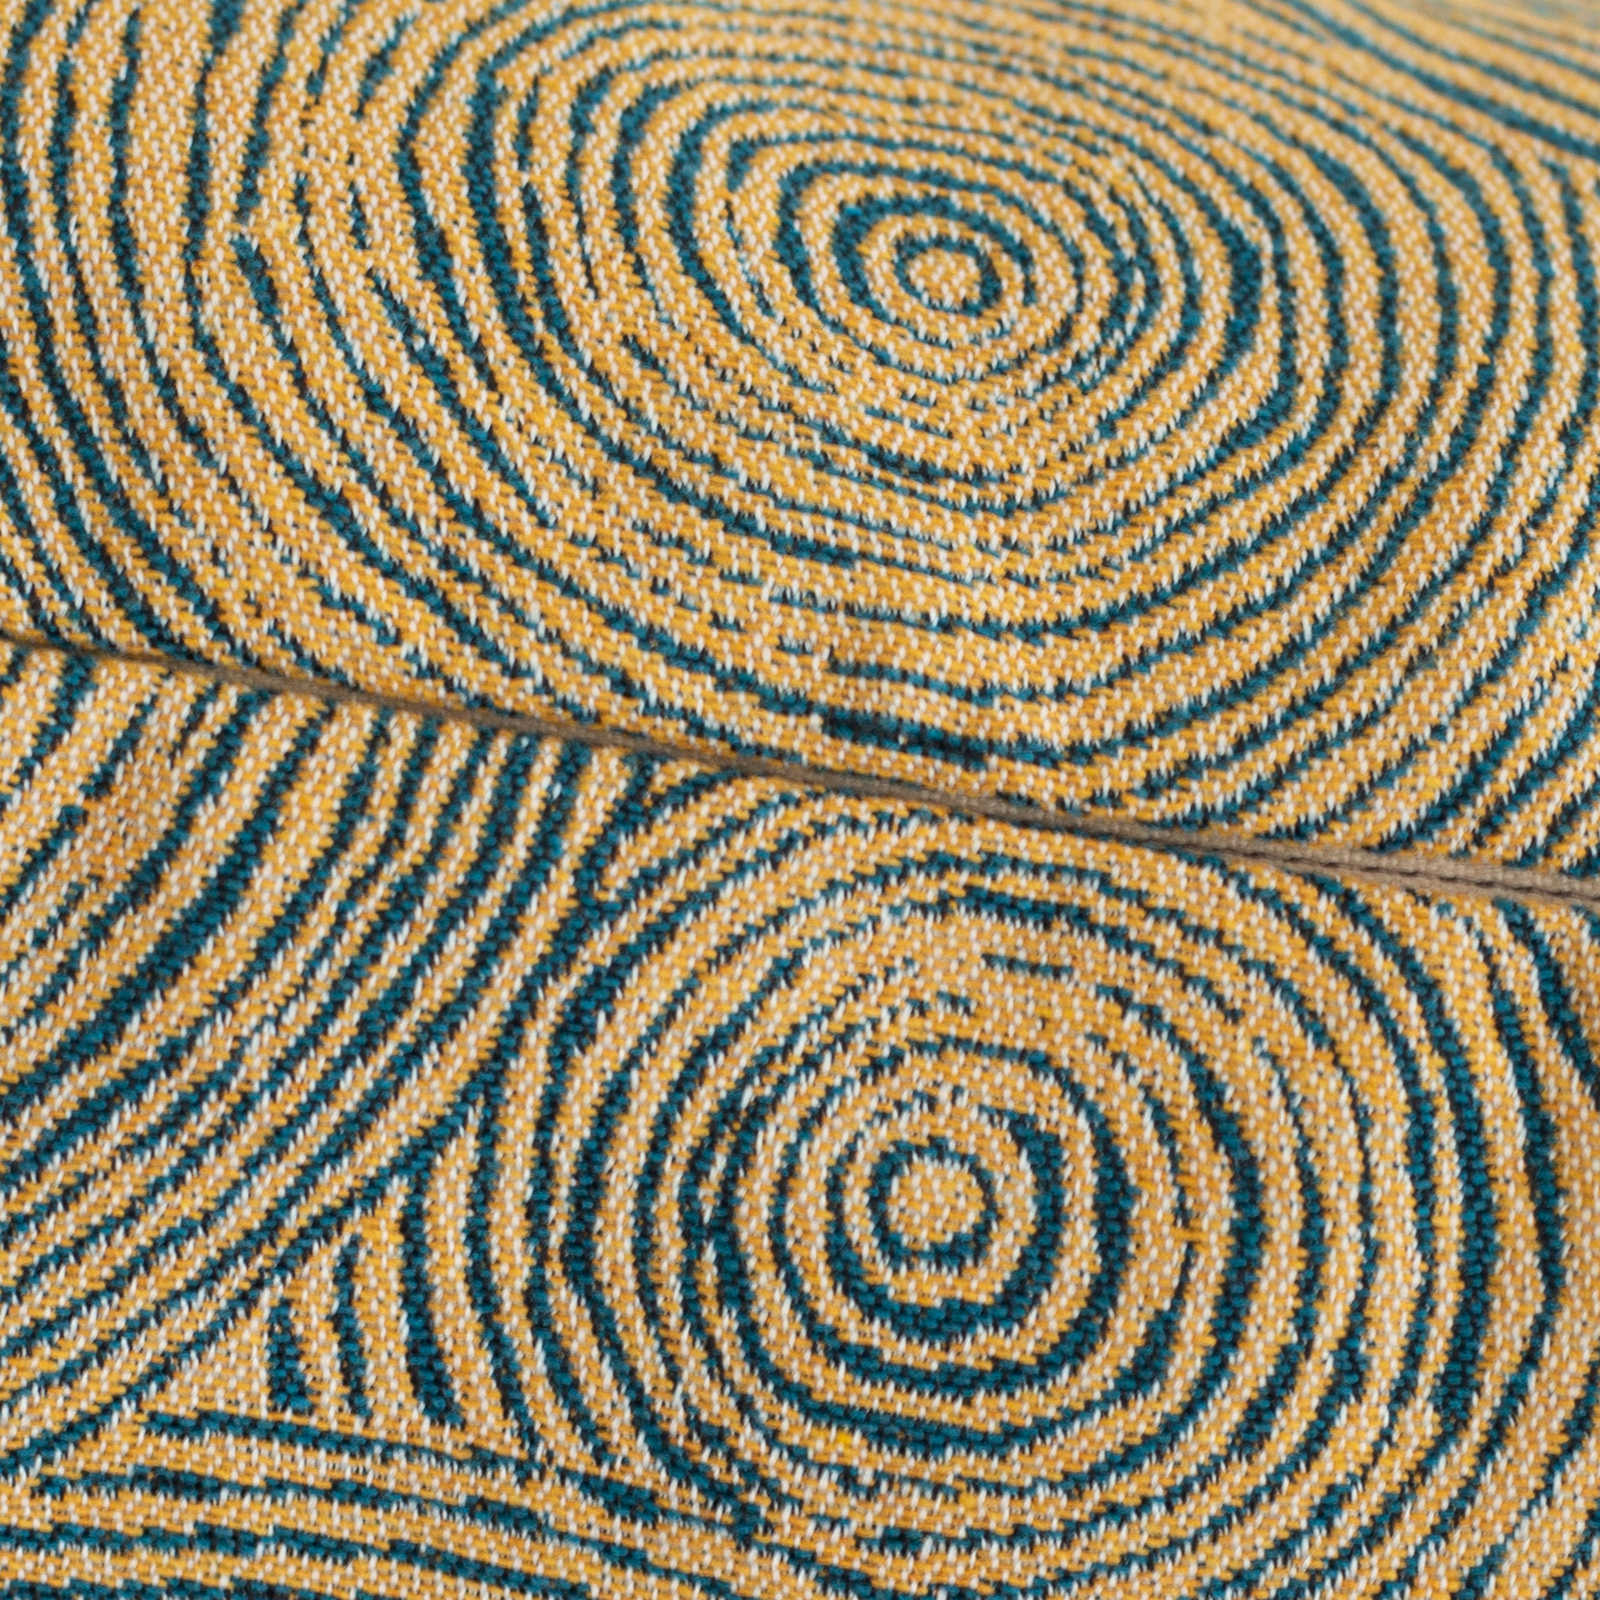             Copricuscino blu-giallo «Circoli Città del Capo», 45x45cm
        